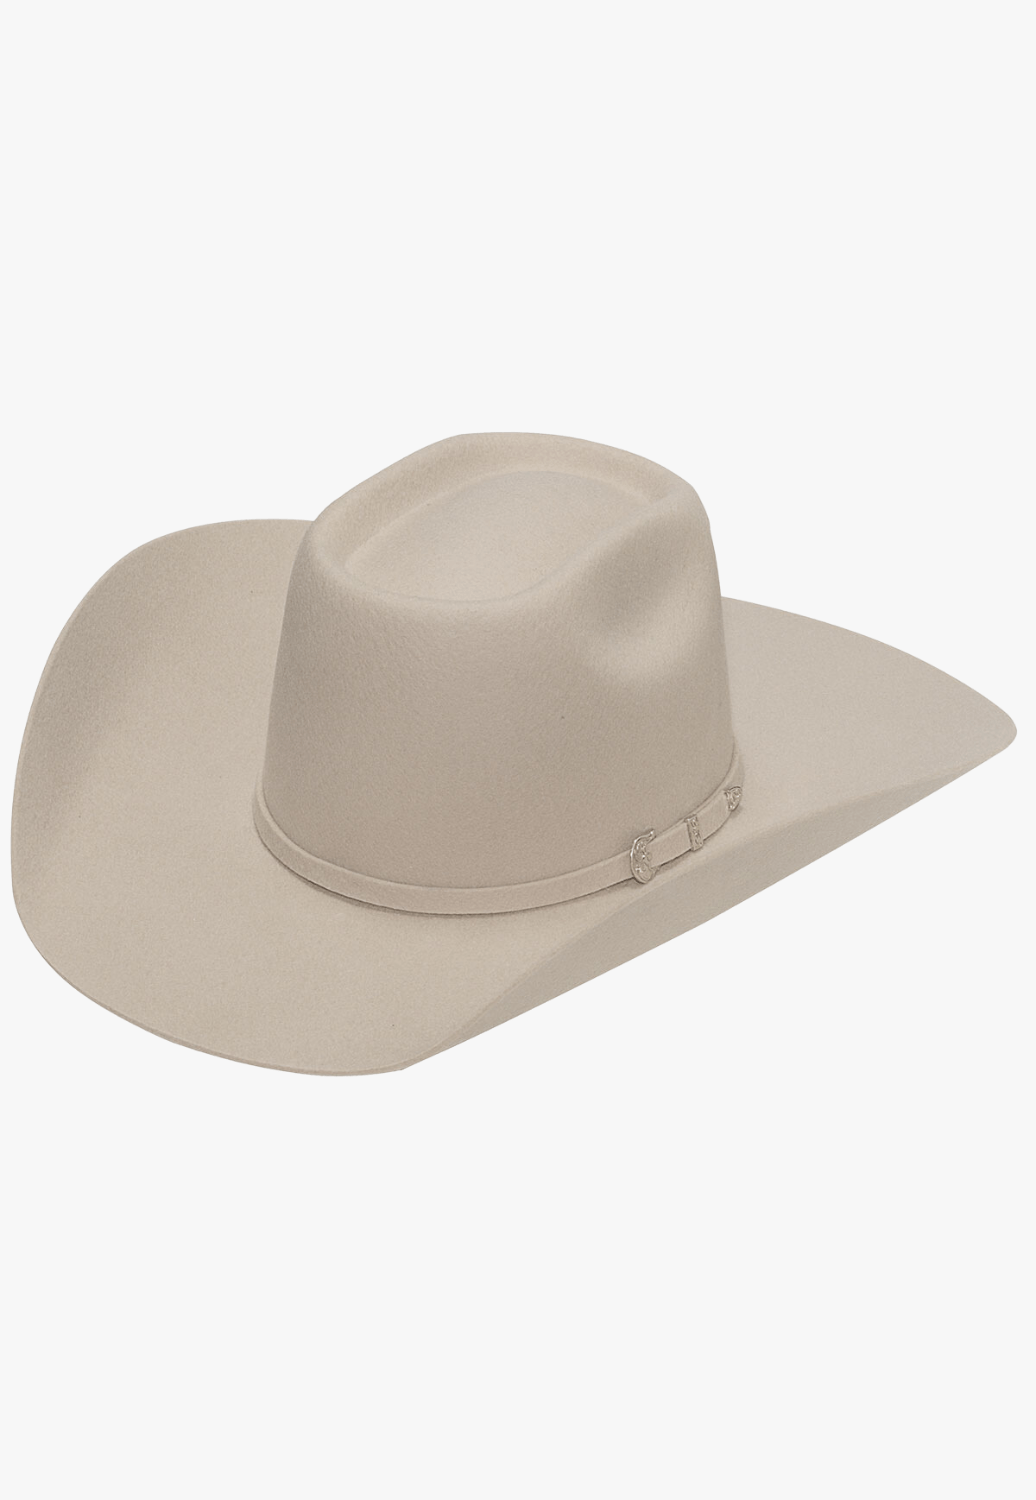 Twister HATS - Felt Twister Rowdy Wool Hat